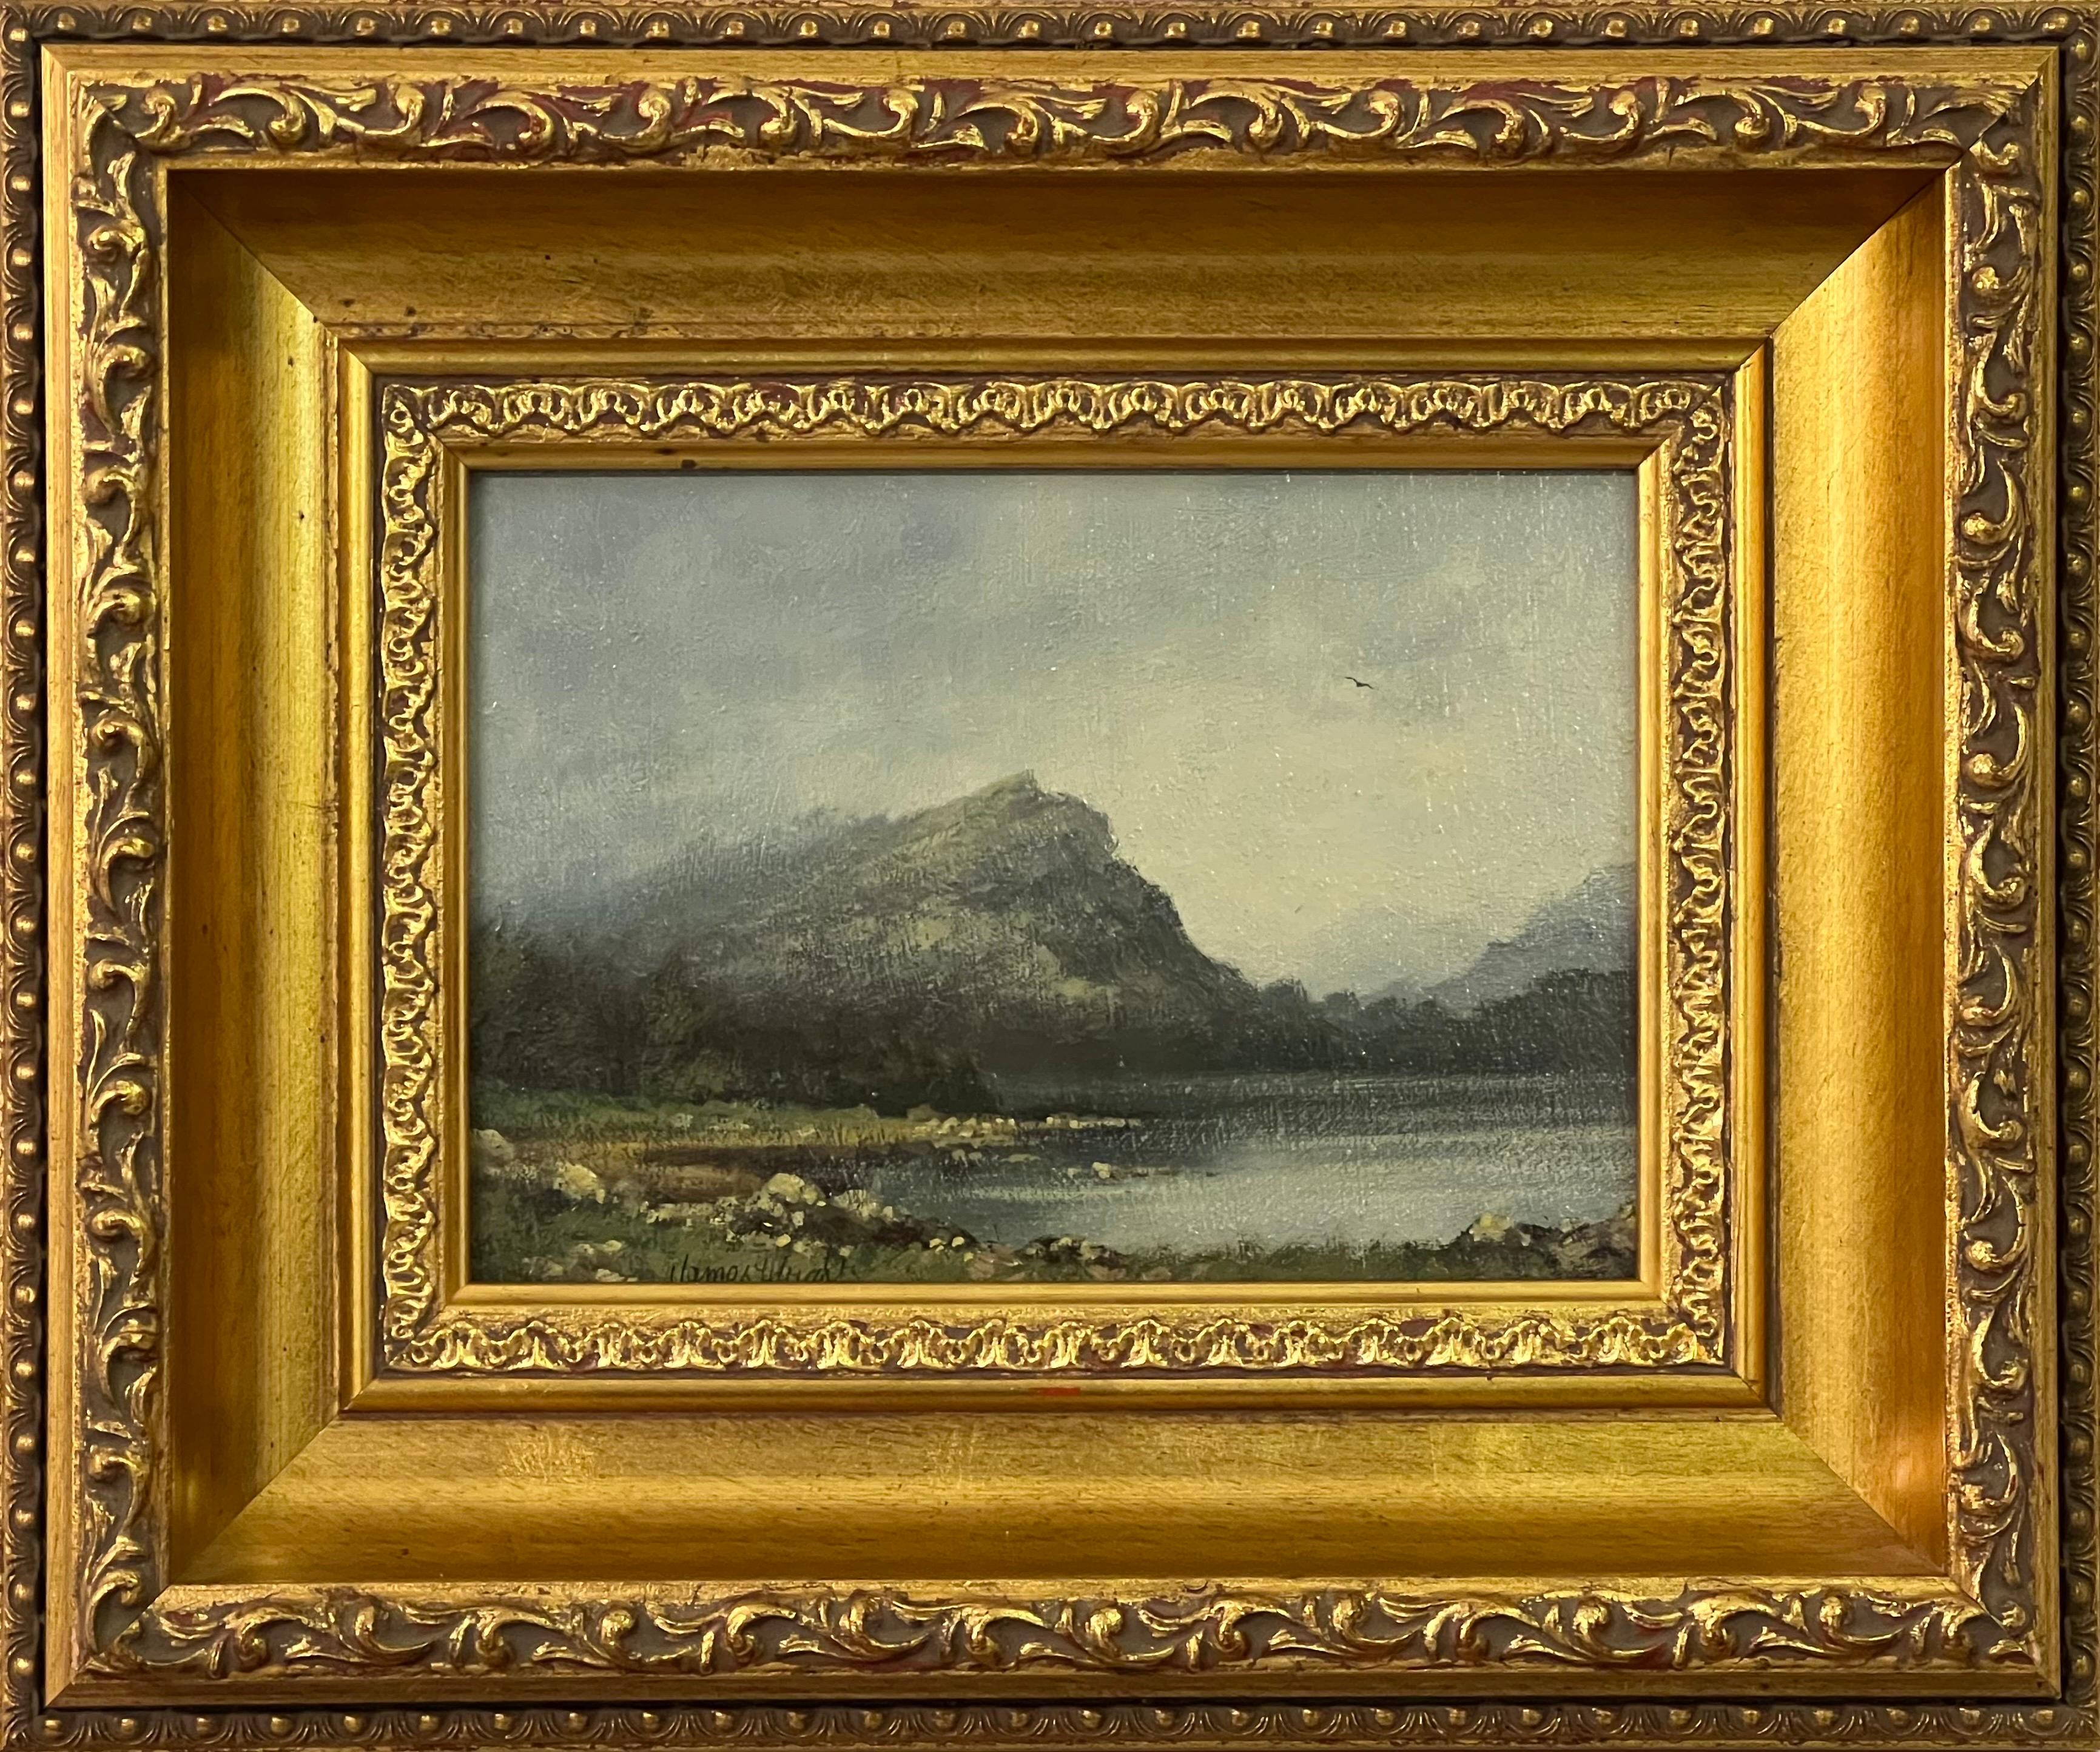 Animal Painting James Wright - Peinture d'un paysage de lac et de montagnes en Angleterre par un artiste britannique du 20e siècle